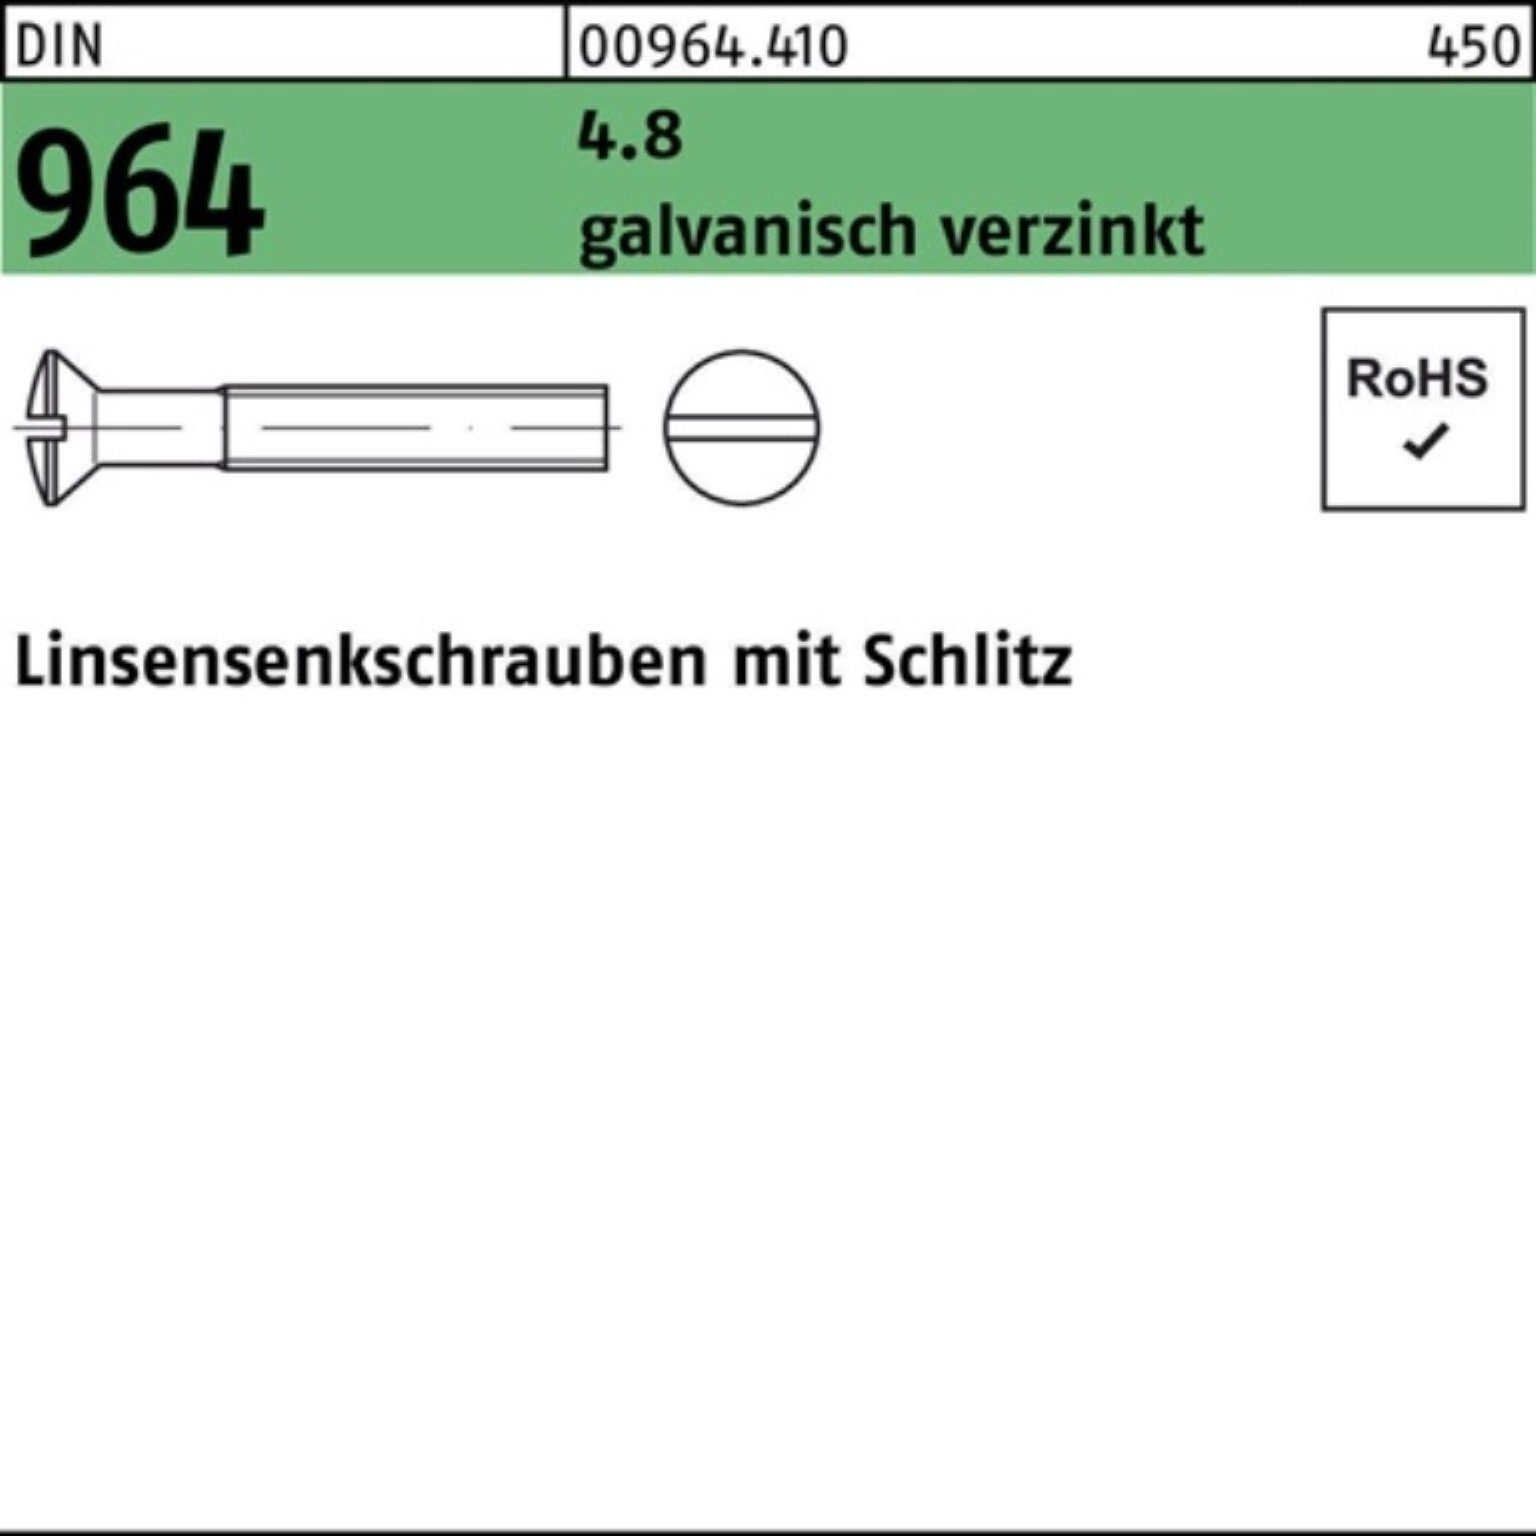 M4x 964 Reyher Pack Schlitz 25 Linsenschraube galv.verz. 200er DIN 4.8 20 Linsensenkschraube